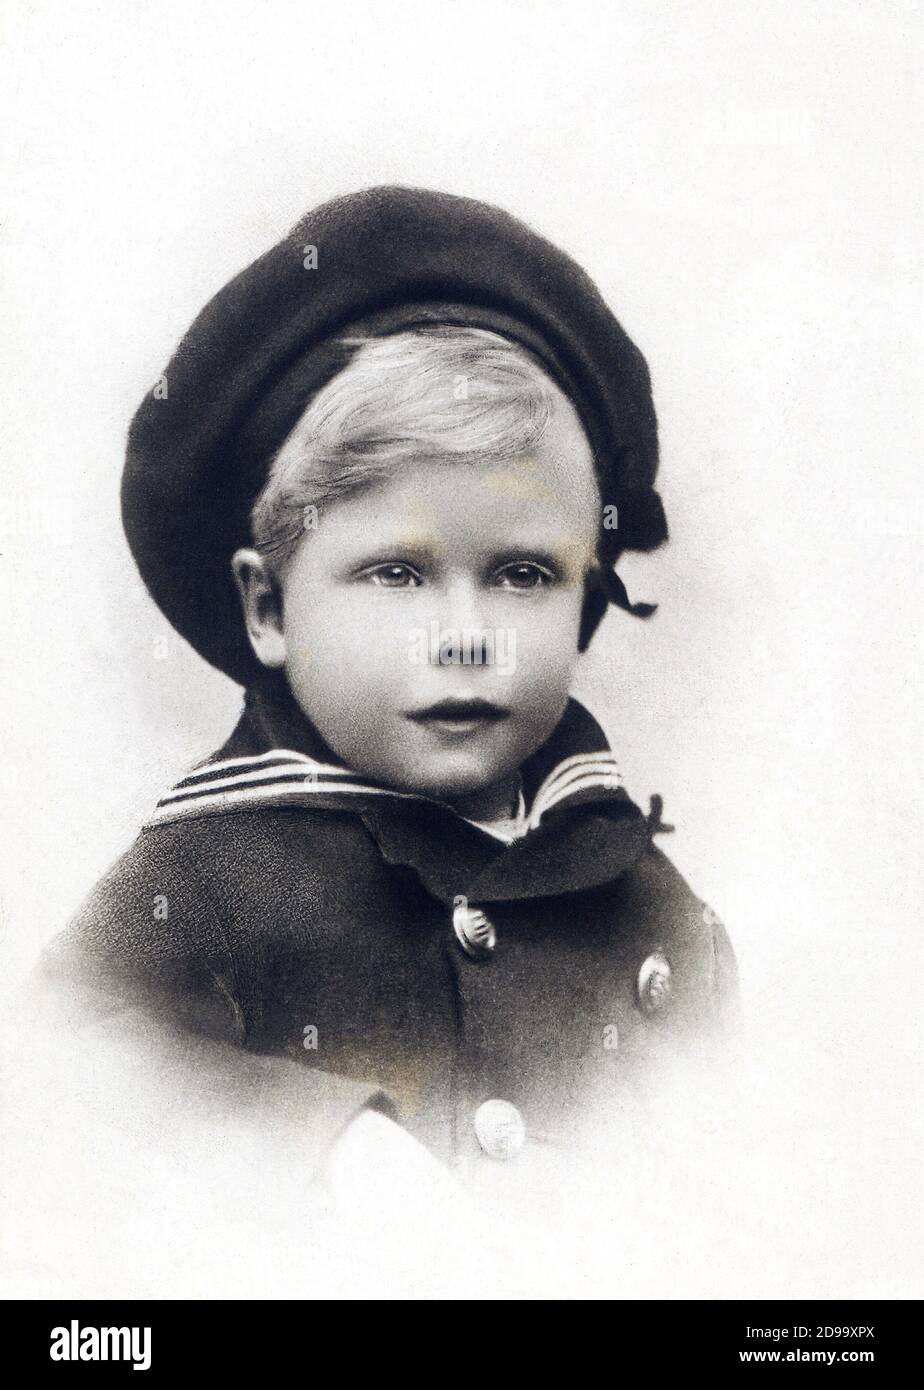 El príncipe de Inglaterra EDWARD de York ( después del duque de Galles y después de la abdicación de la señorita Wallis Simpson : Duque DE WINDSOR ) ( 1894 - 1972 ), desde 1936 Rey EDUARDO VIII - CASA REAL - REALEZA - REALI - nobiltà - nobleza - Personalità da bambini piccoli - personalidad niño - chico - sombrero - cappello vestigto alla marinara - sombrero marinero vestido uniforme ---- Archivio GBB Foto de stock